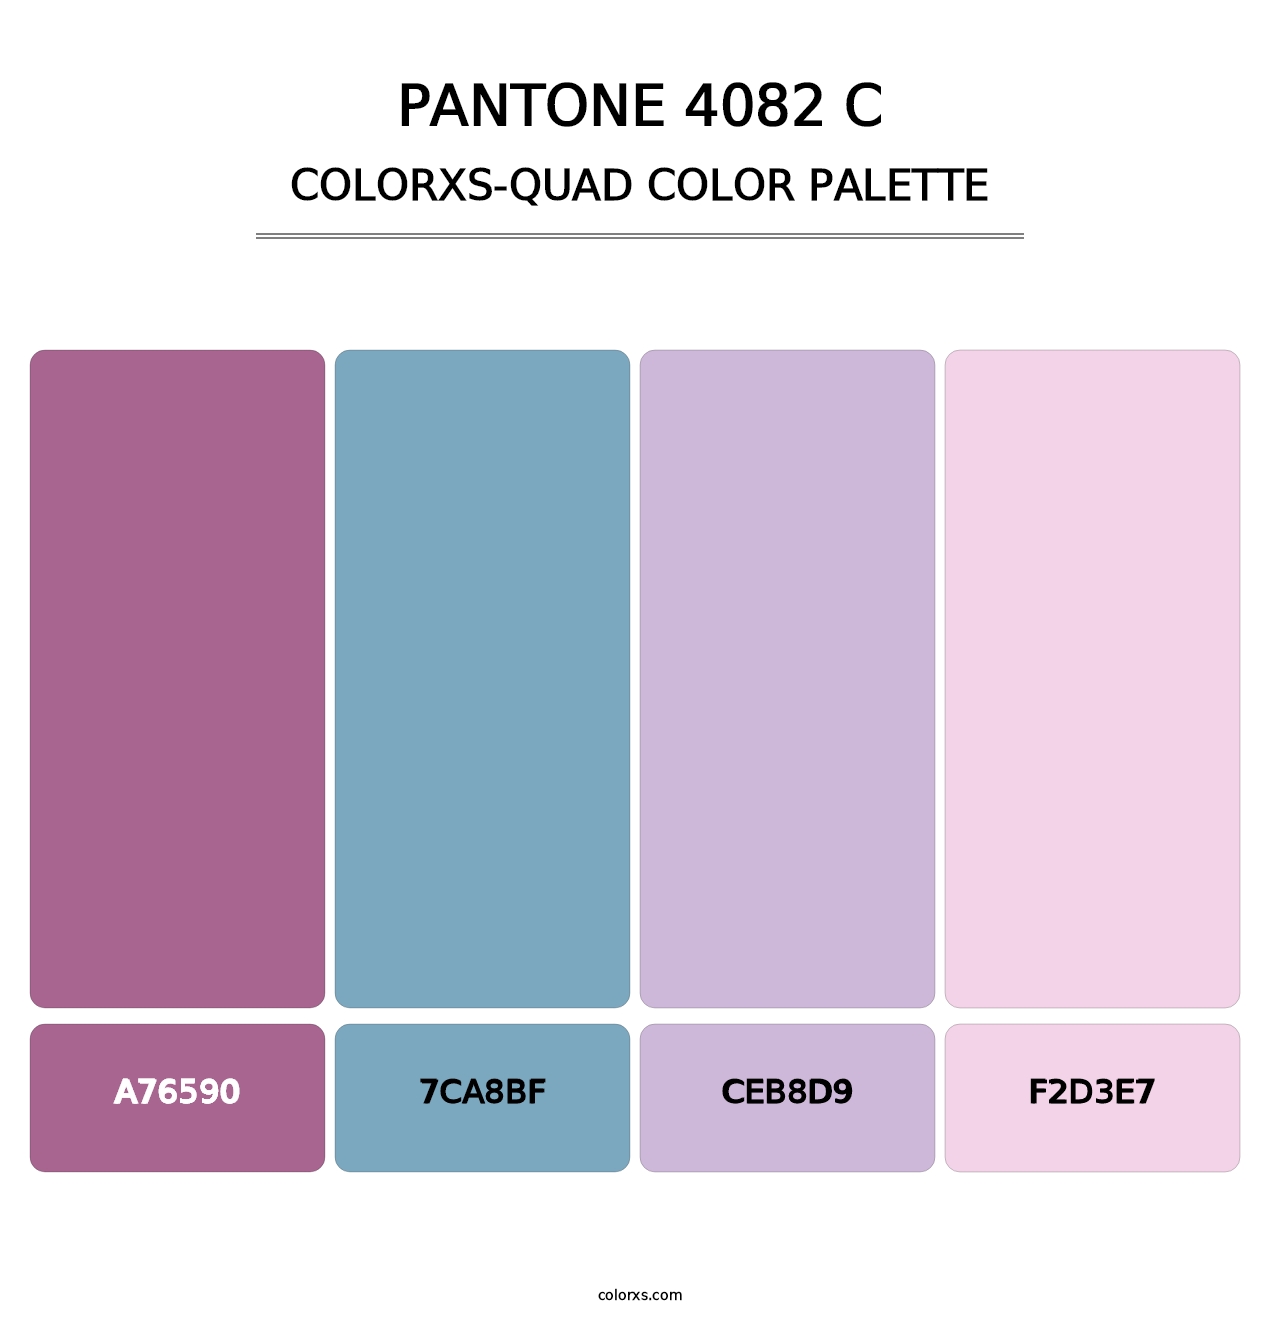 PANTONE 4082 C - Colorxs Quad Palette